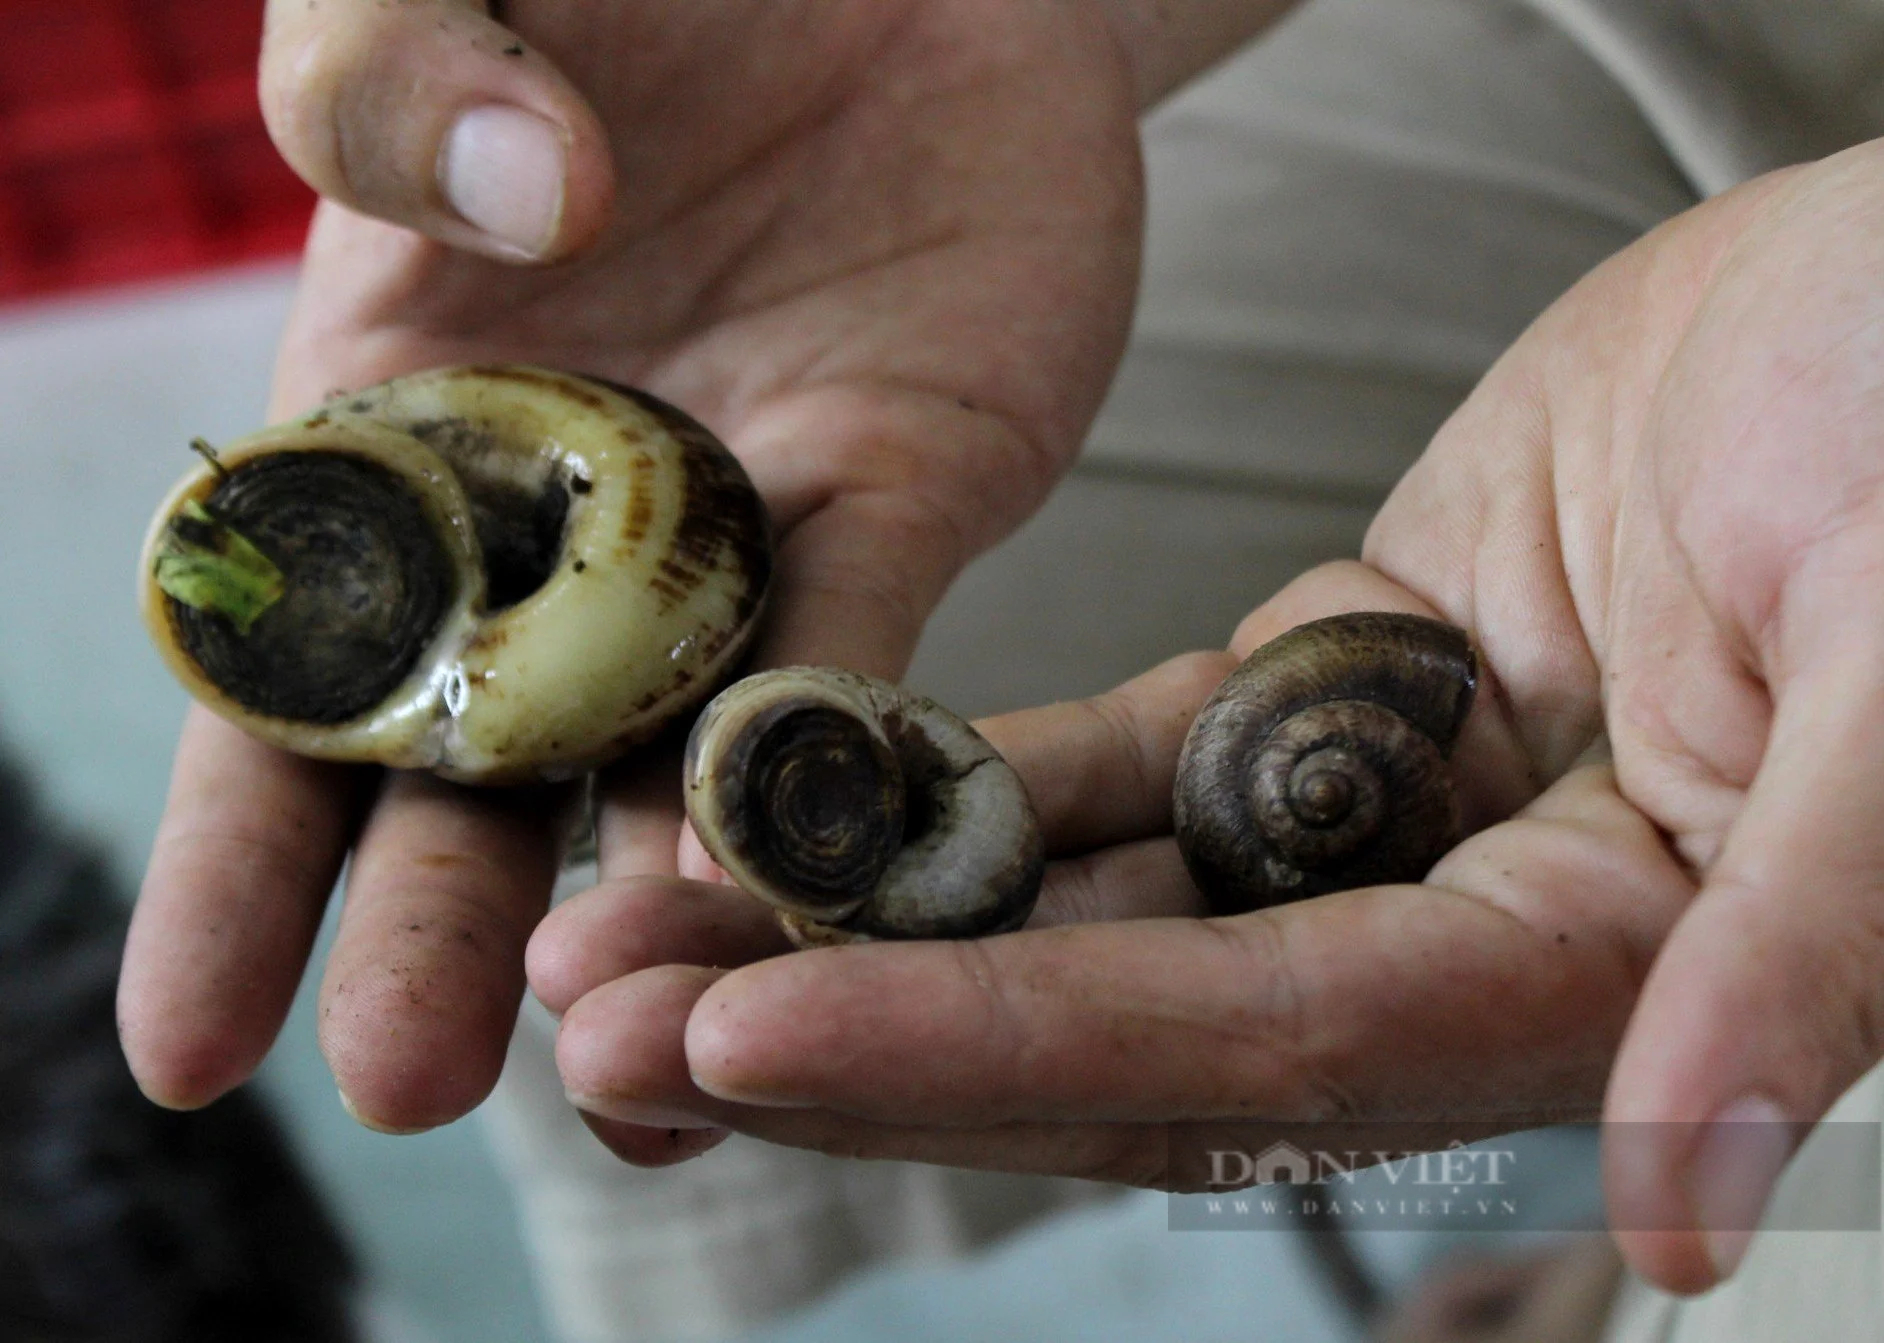 Nuôi loài ốc đặc sản thơm mùi thuốc Nam, bán giá 400.000 đồng/kg, anh nông dân Tây Ninh hốt bạc - Ảnh 7.